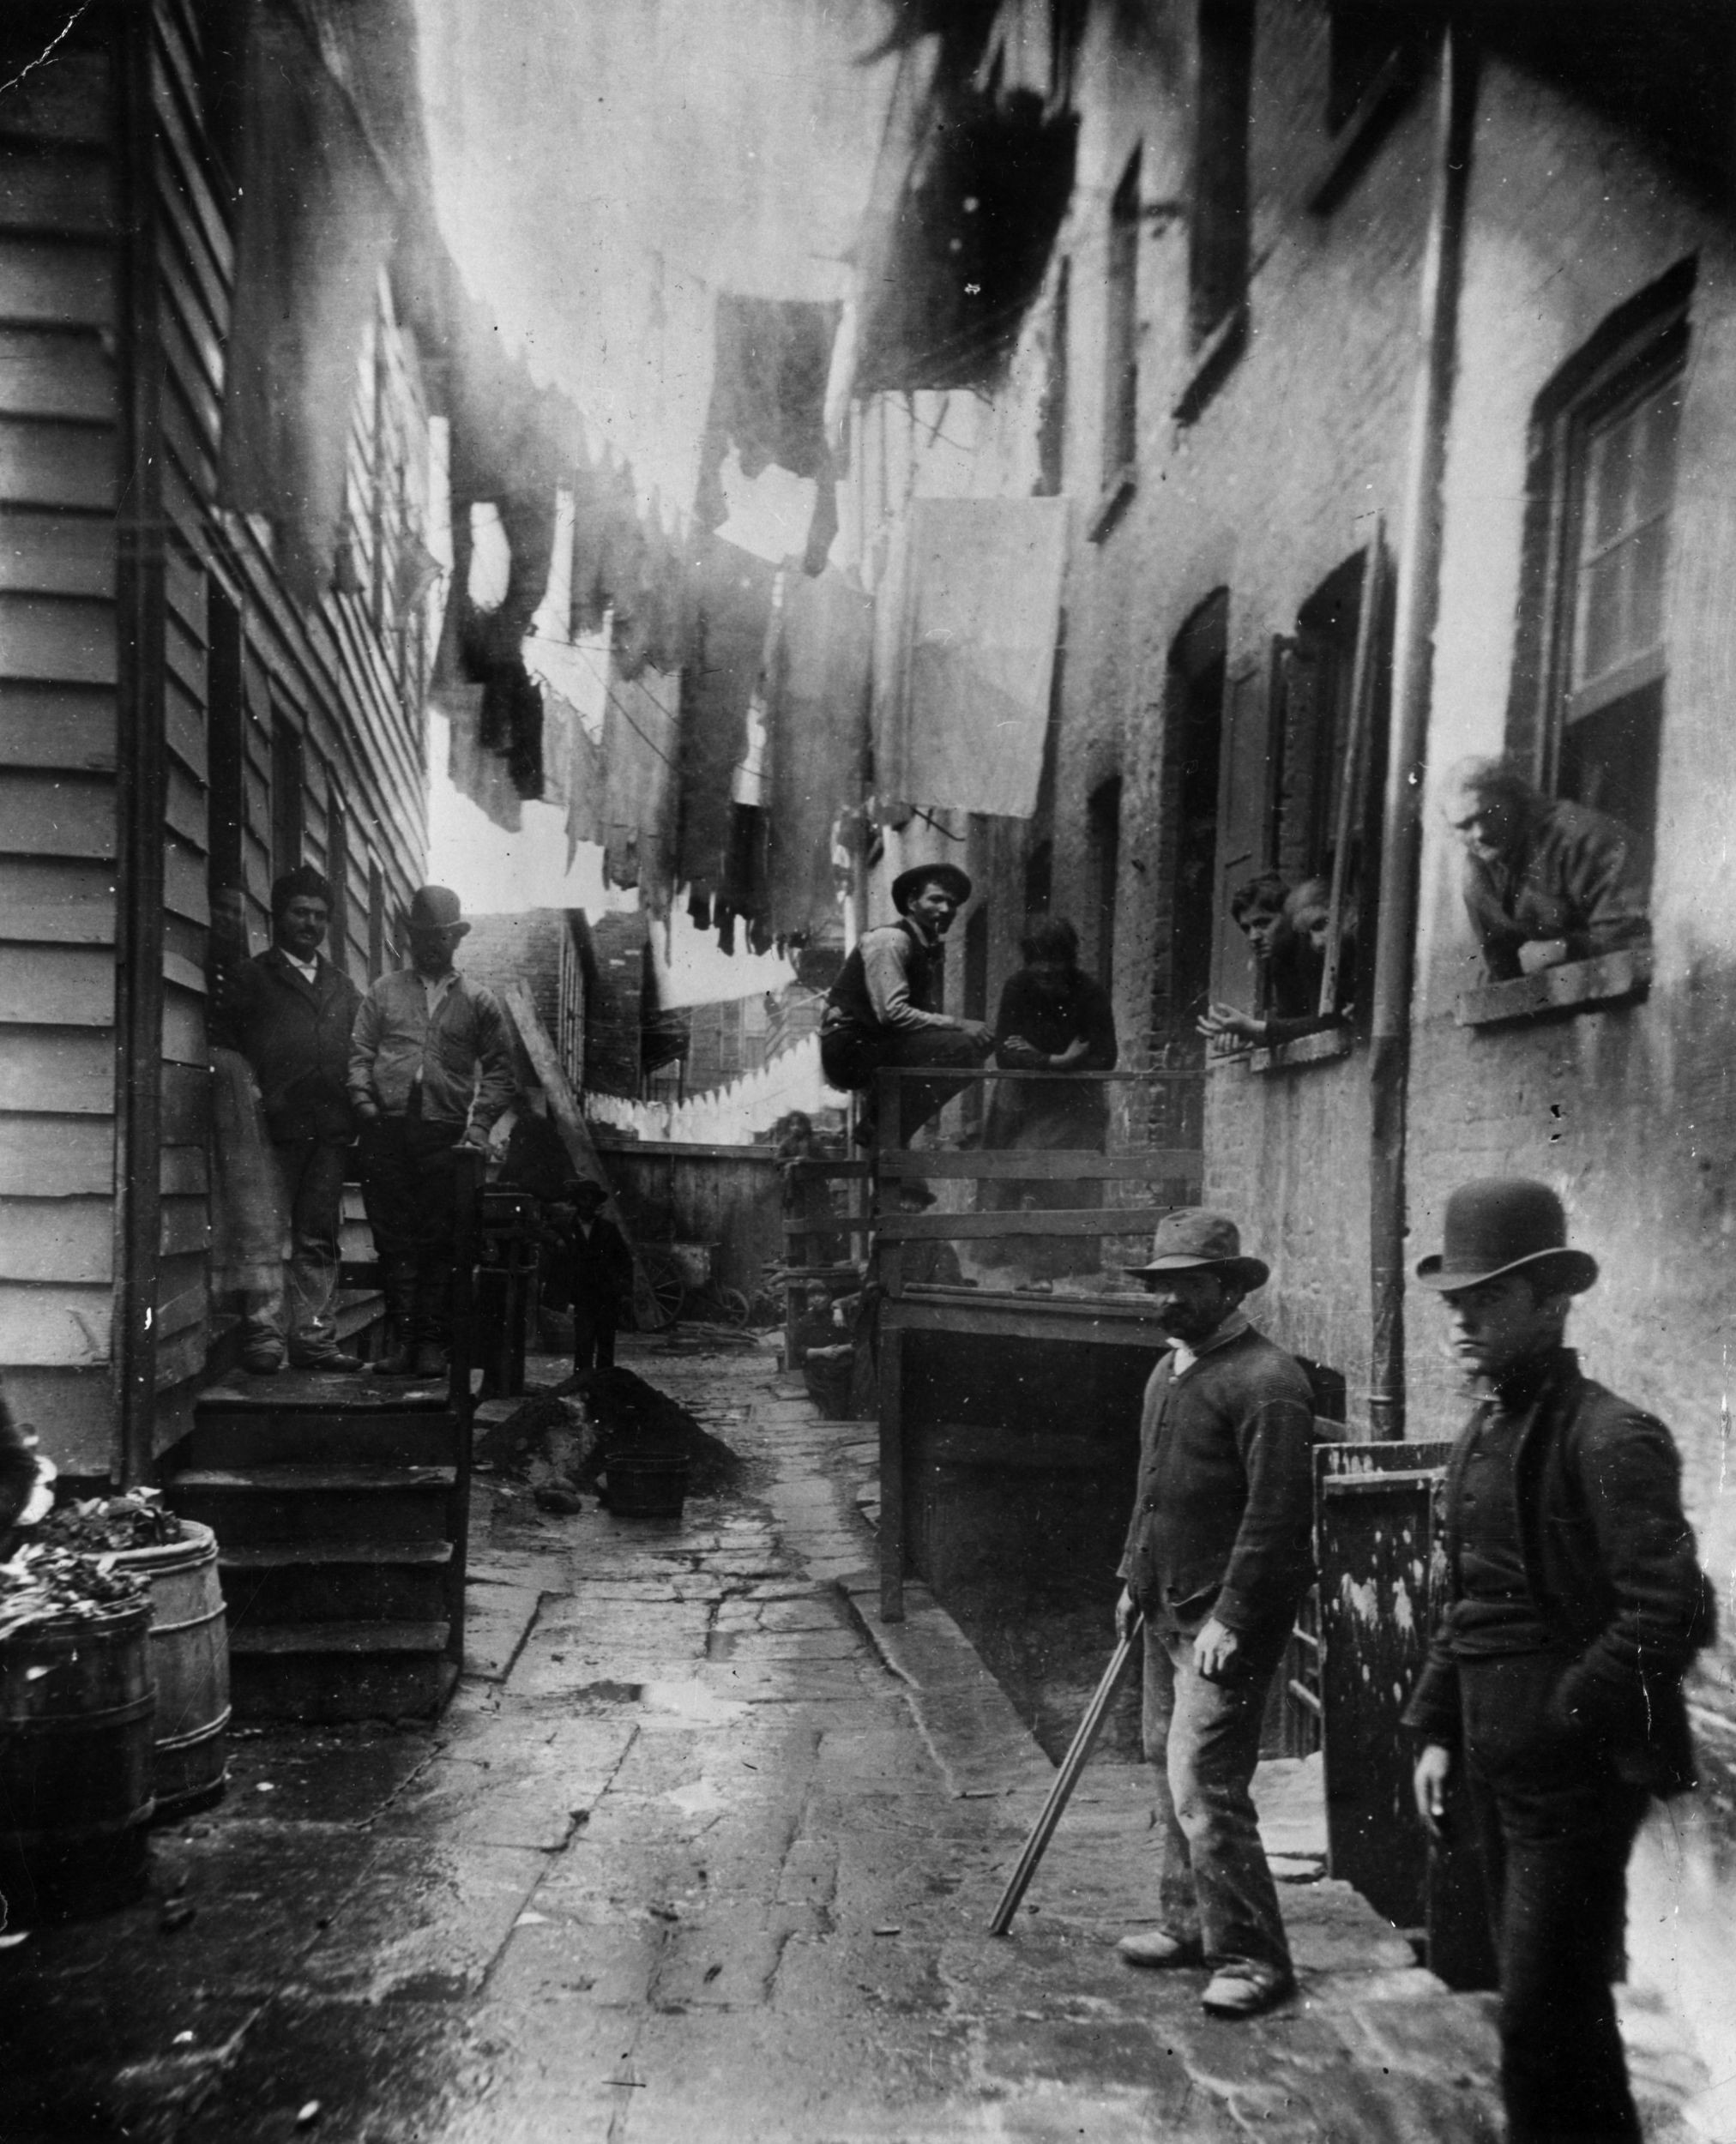 Бандитский ночлег. Трущобы Нью-Йорка, 1888. Фотограф Якоб Риис